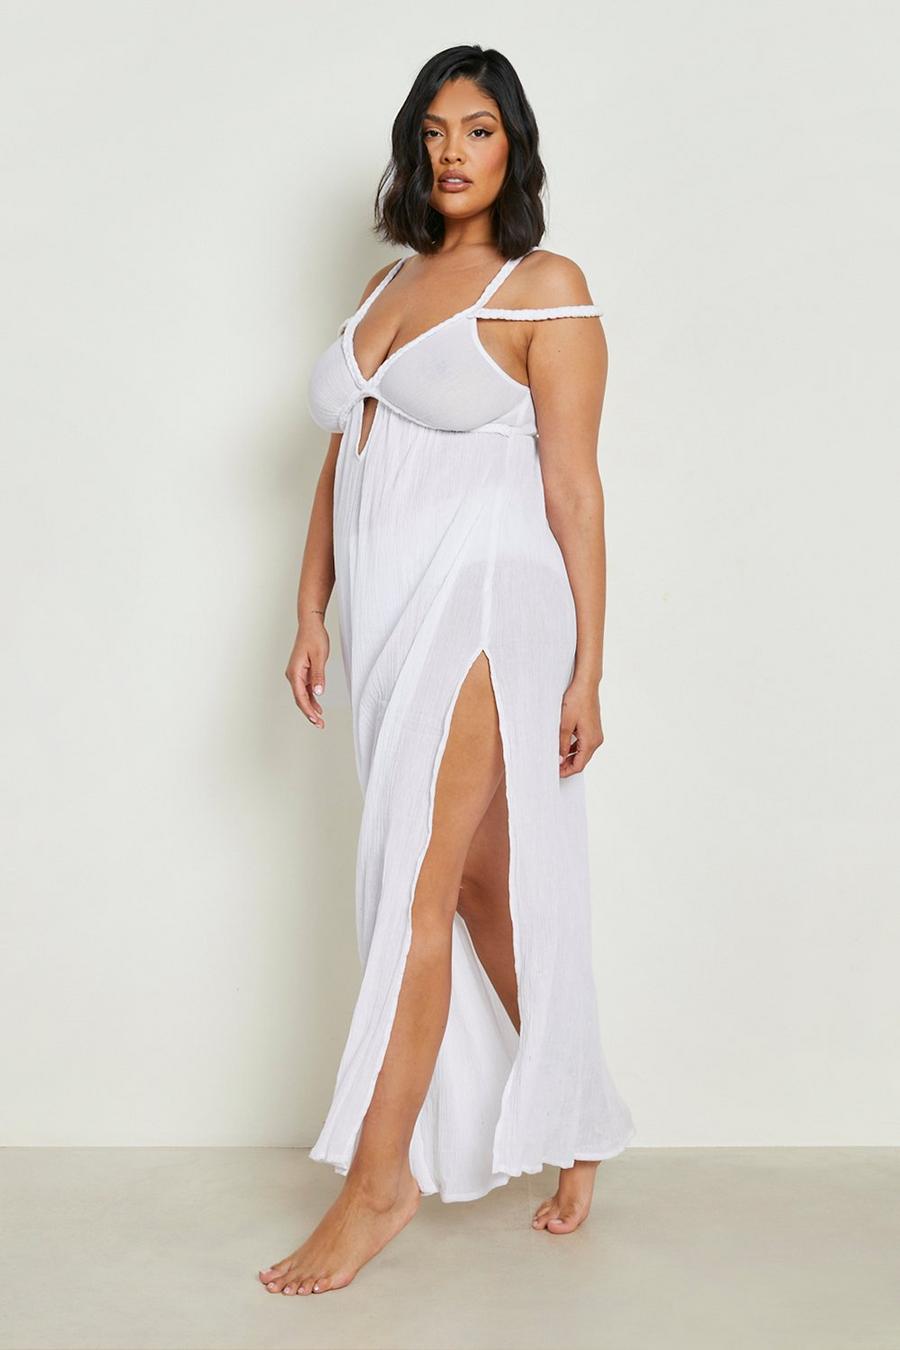 לבן blanco שמלת חוף מקסי מבד כותנה אוורירי עם שזירה, מידות גדולות